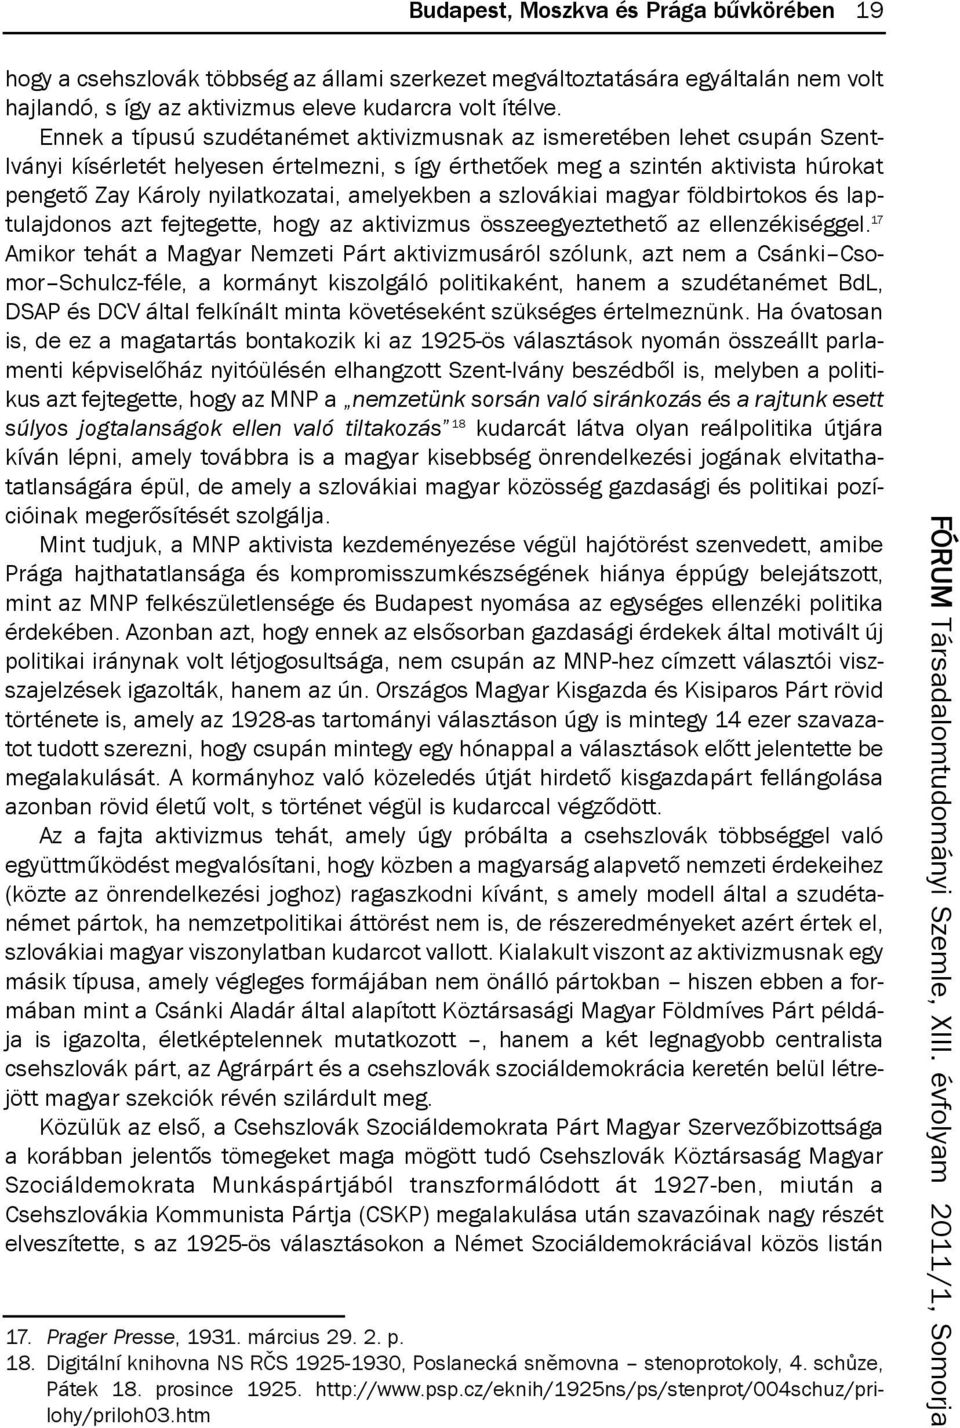 amelyekben a szlovákiai magyar földbirtokos és laptulajdonos azt fejtegette, hogy az aktivizmus összeegyeztethető az ellenzékiséggel.